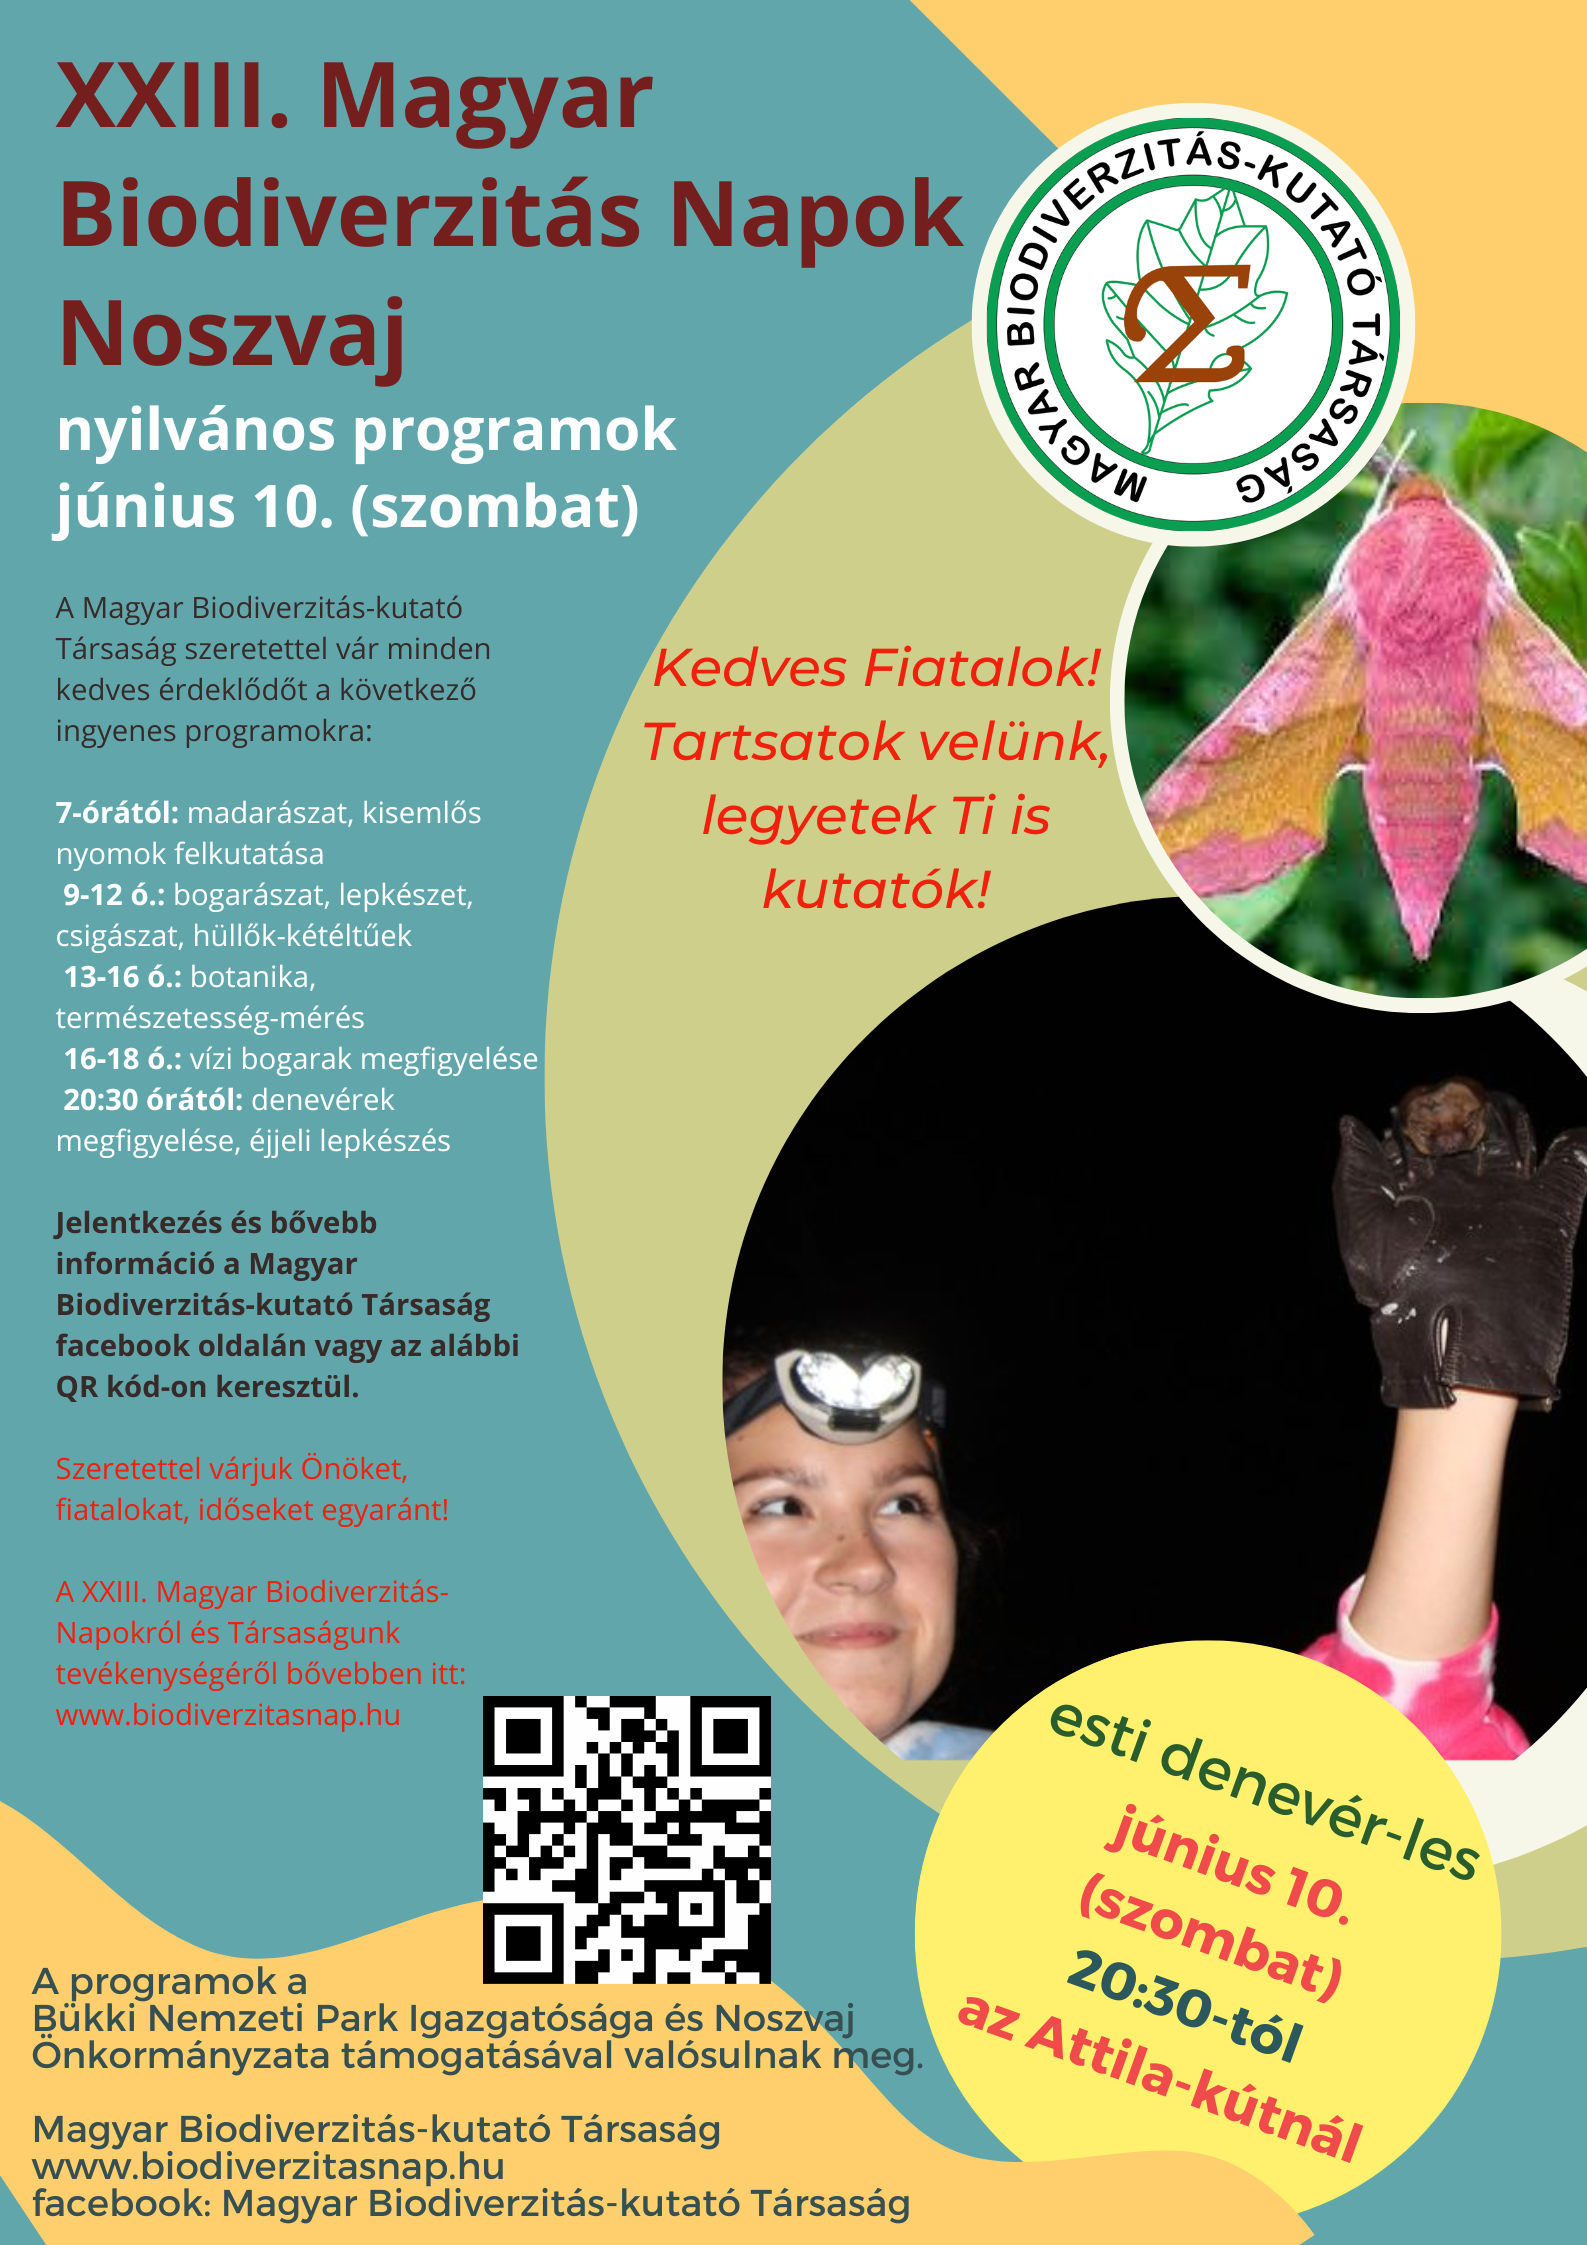 xxiii magyar biodiverzitas napok nyilvanos programok plakat